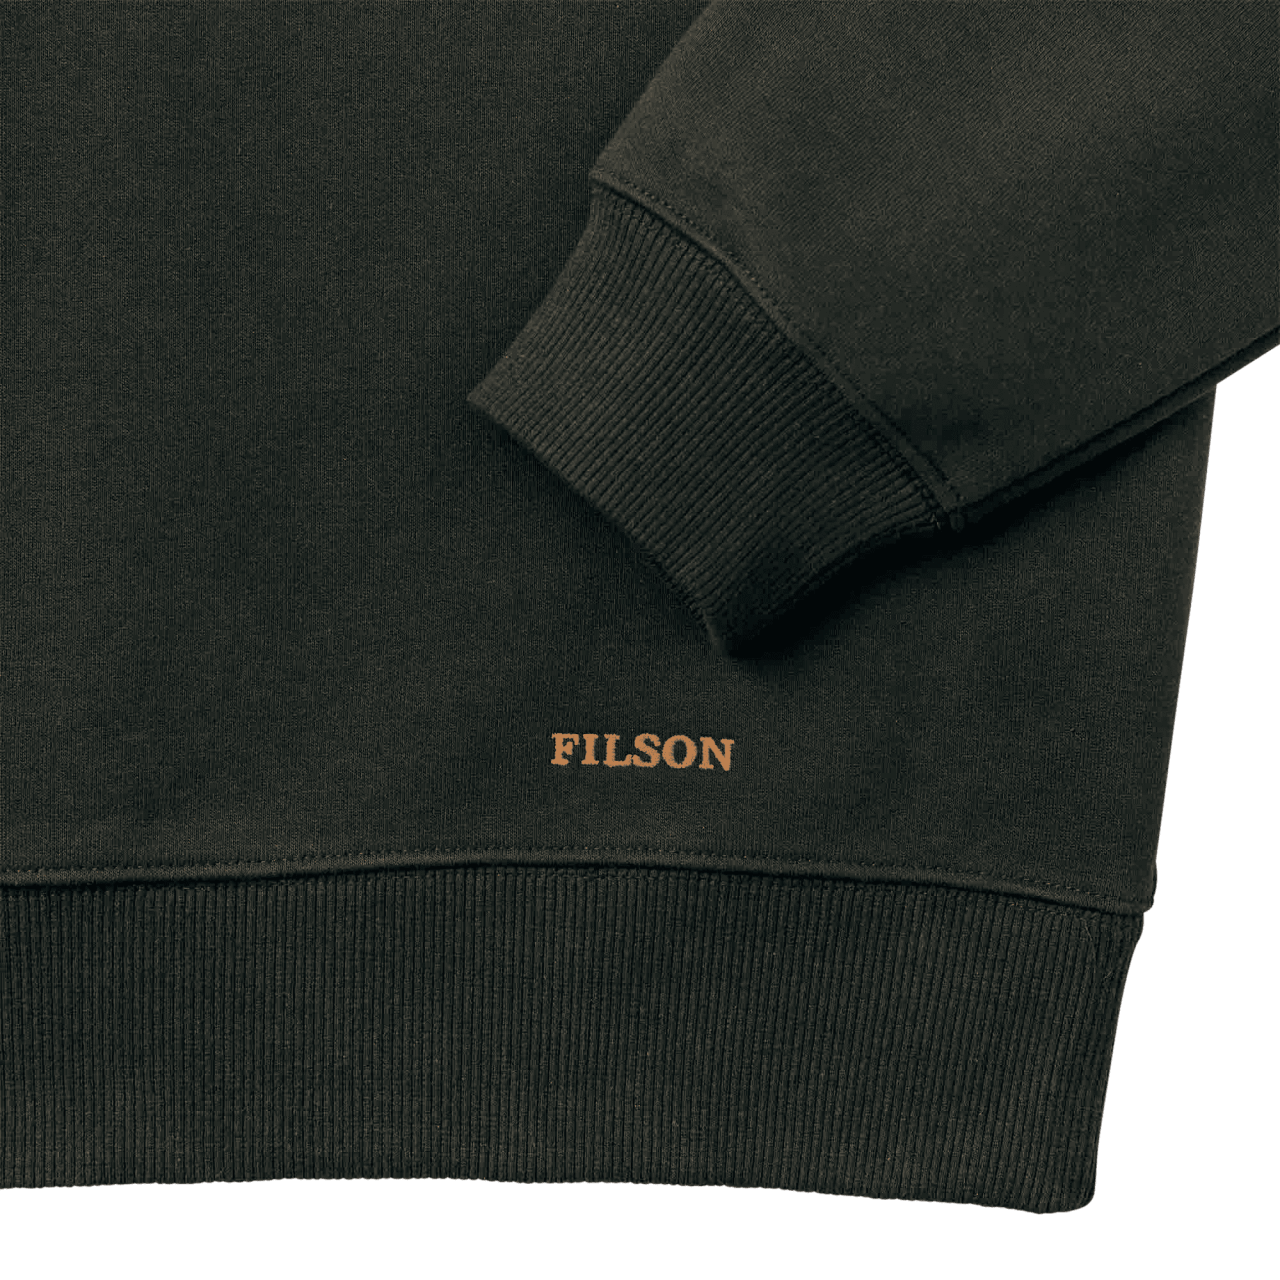 Filson Prospector Crewneck Sweater - faded black